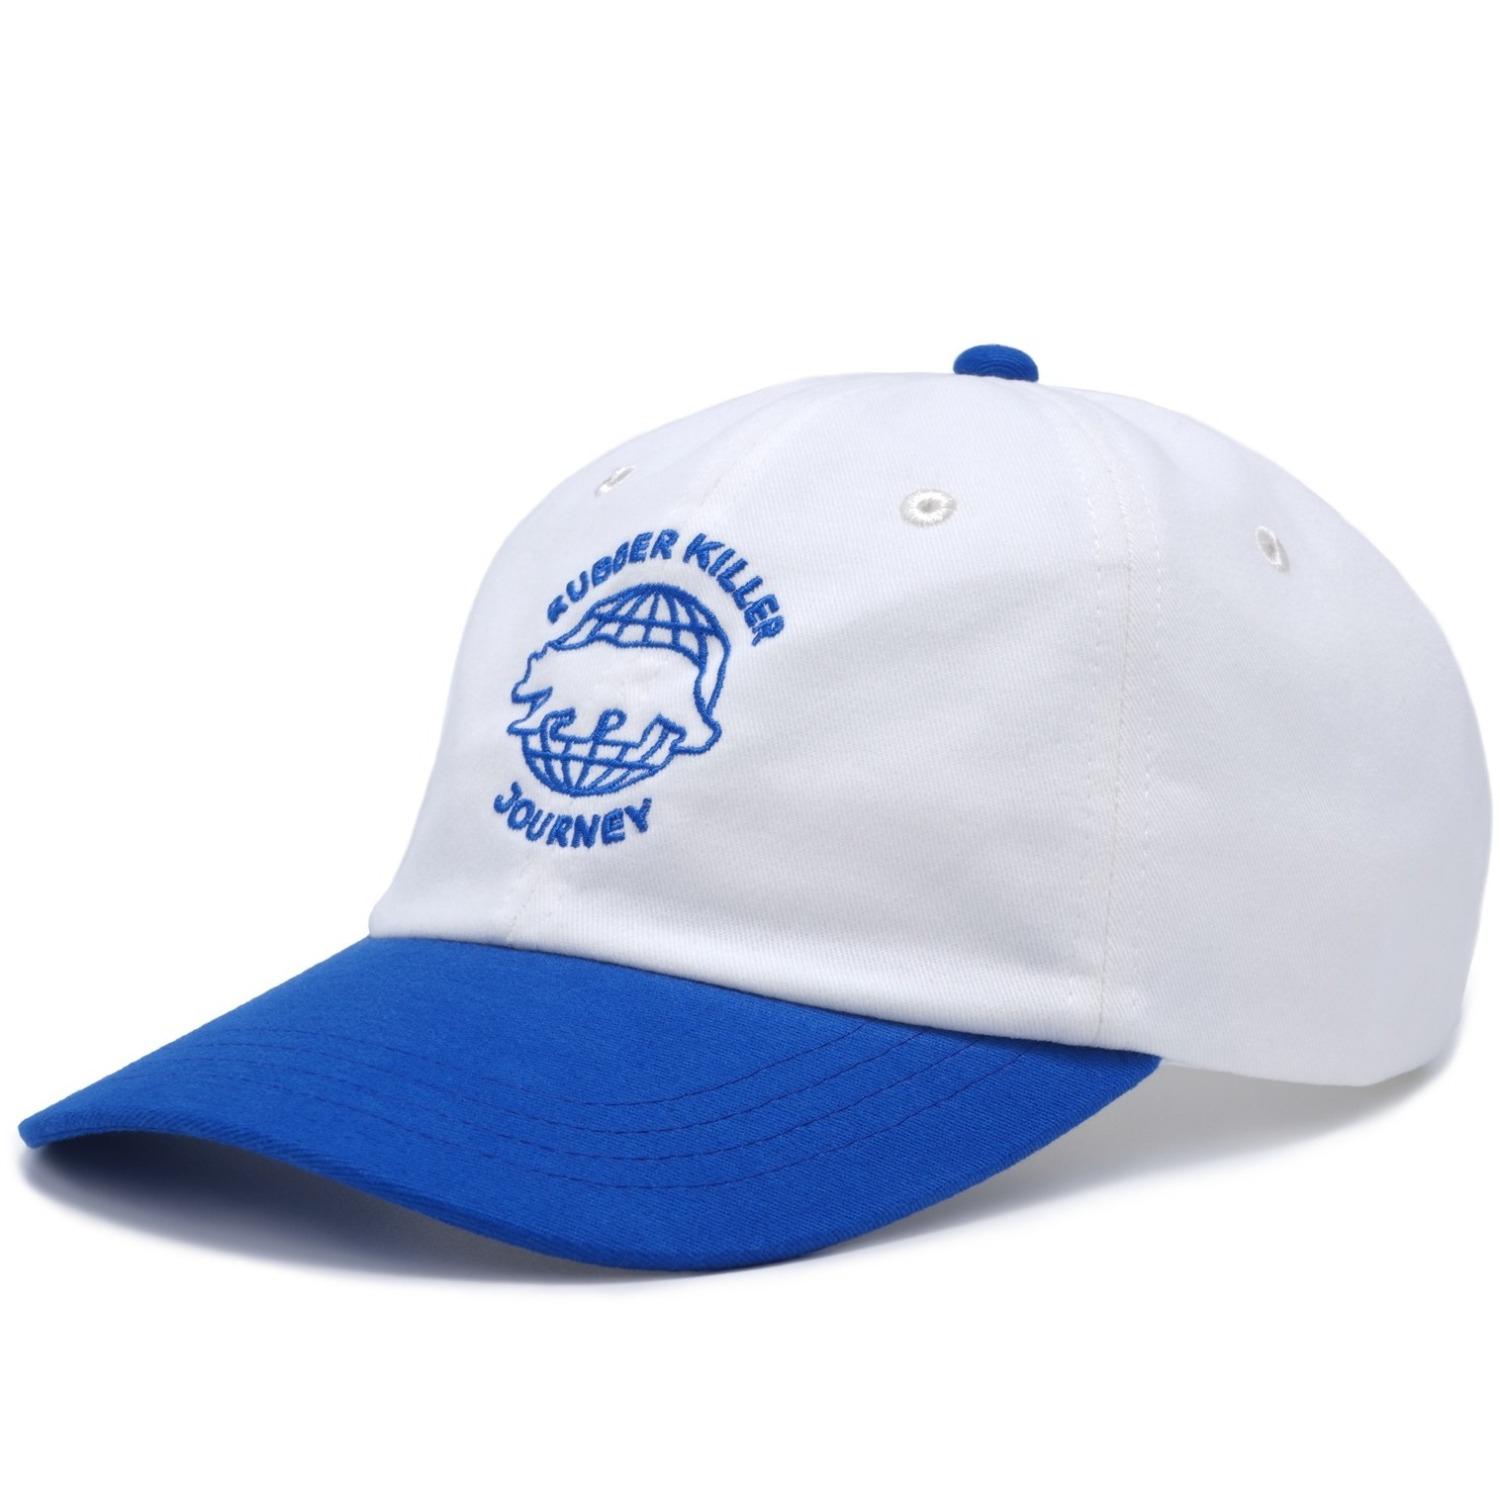 JOURNEY - COTTON CAP (BLUE)